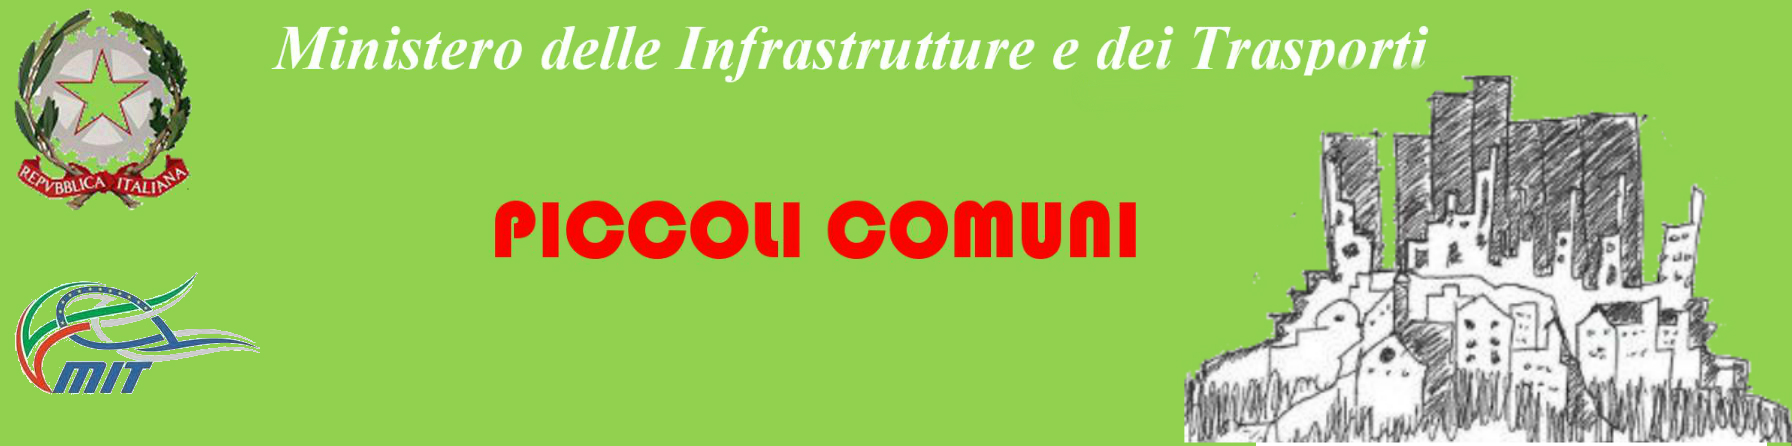 Ministero delle Infrastrutture e dei Trasporti - Piccoli Comuni